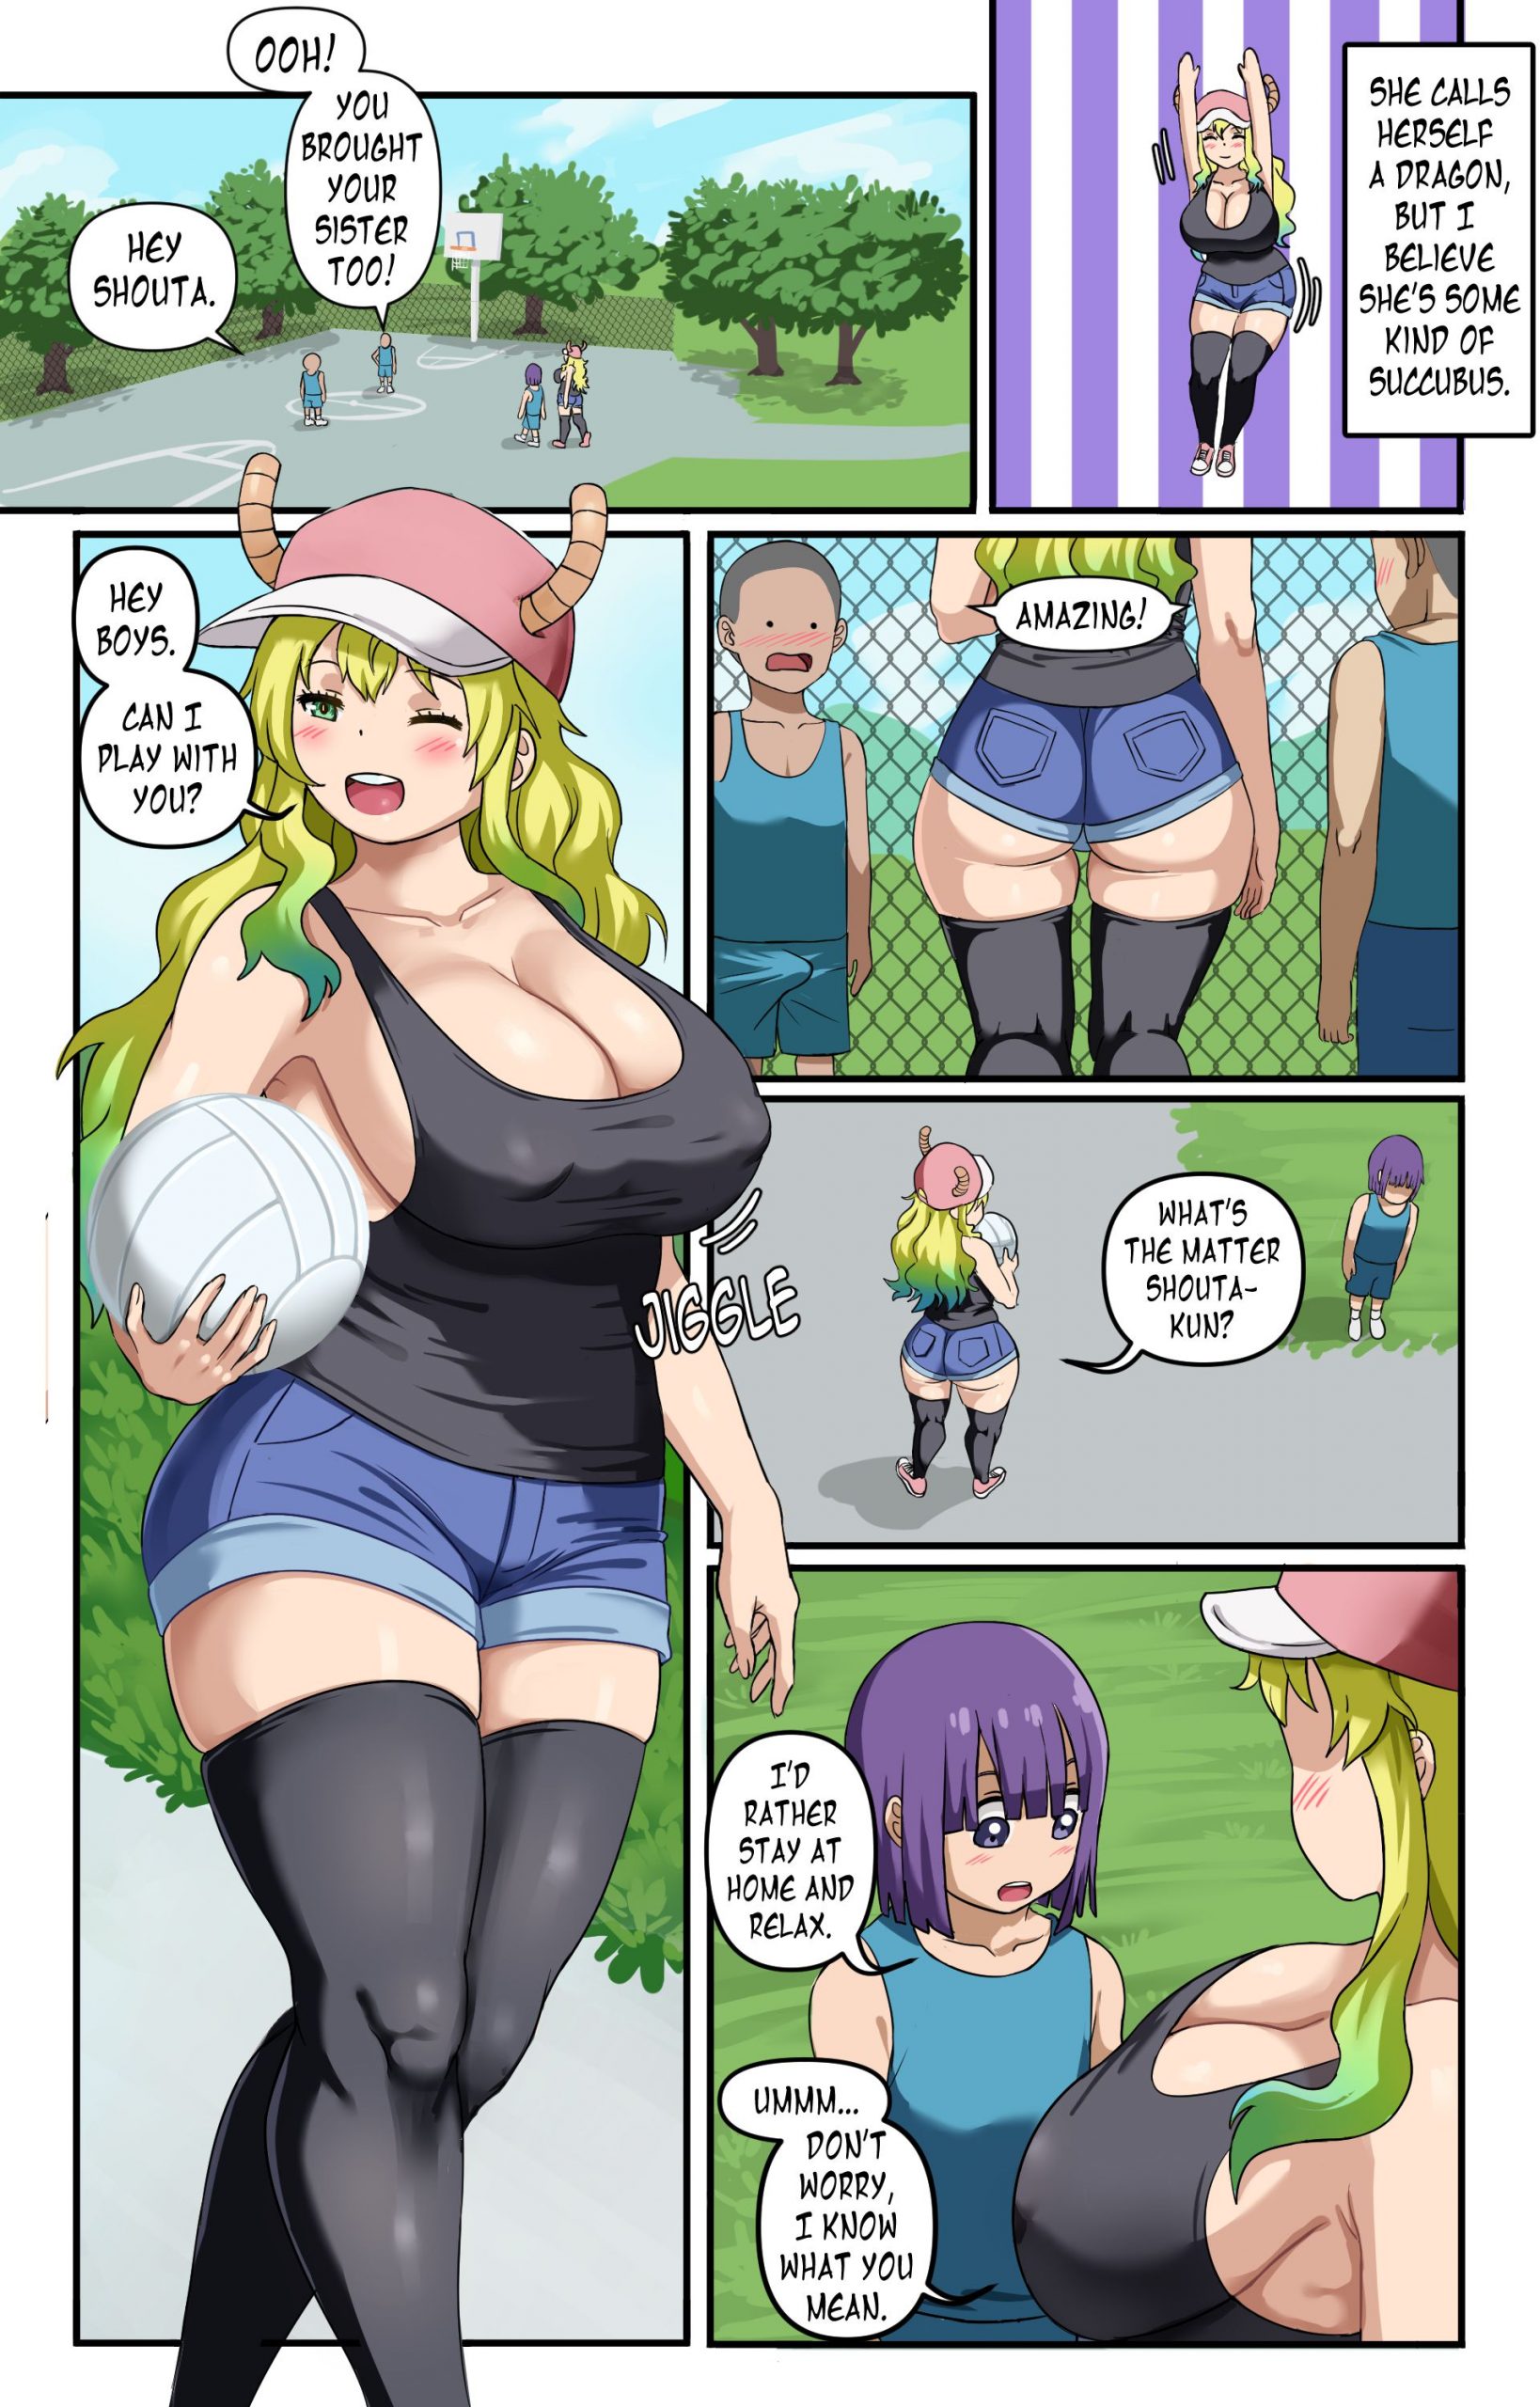 Kobayashi maid dragon porn comics